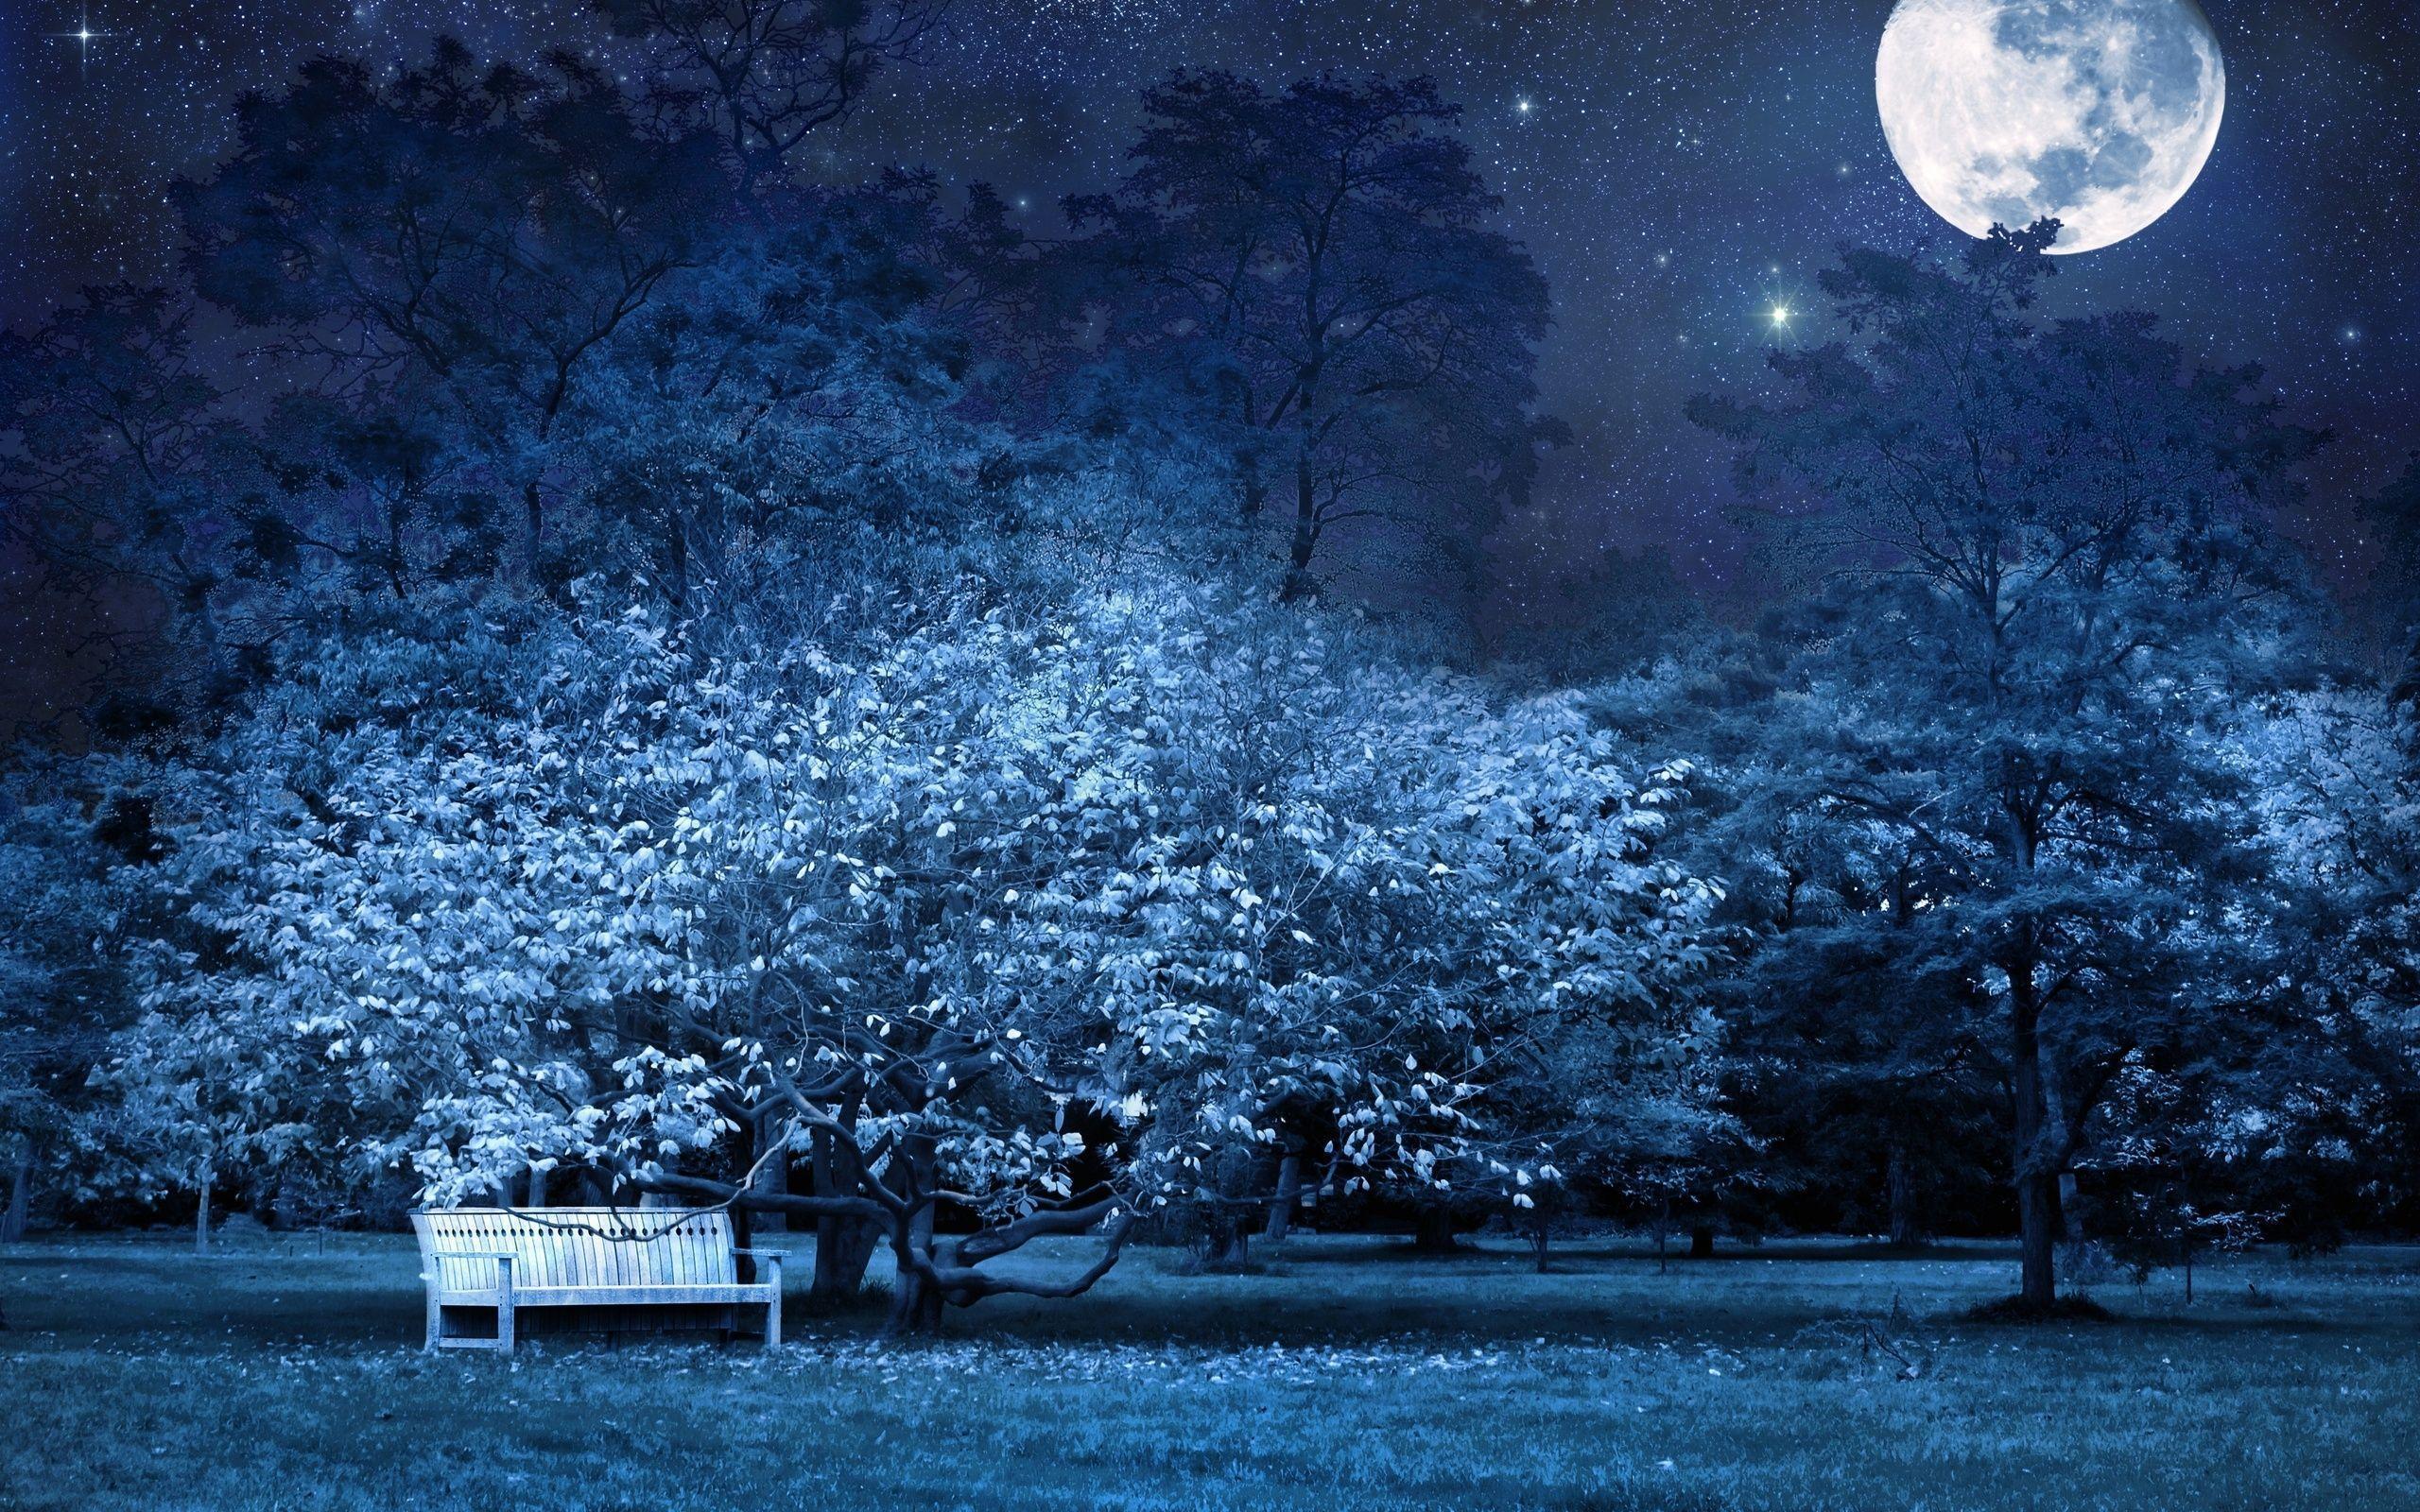 Wallpaper Night, Bench, Park, Trees, Stars, Full moon, Sky, Light